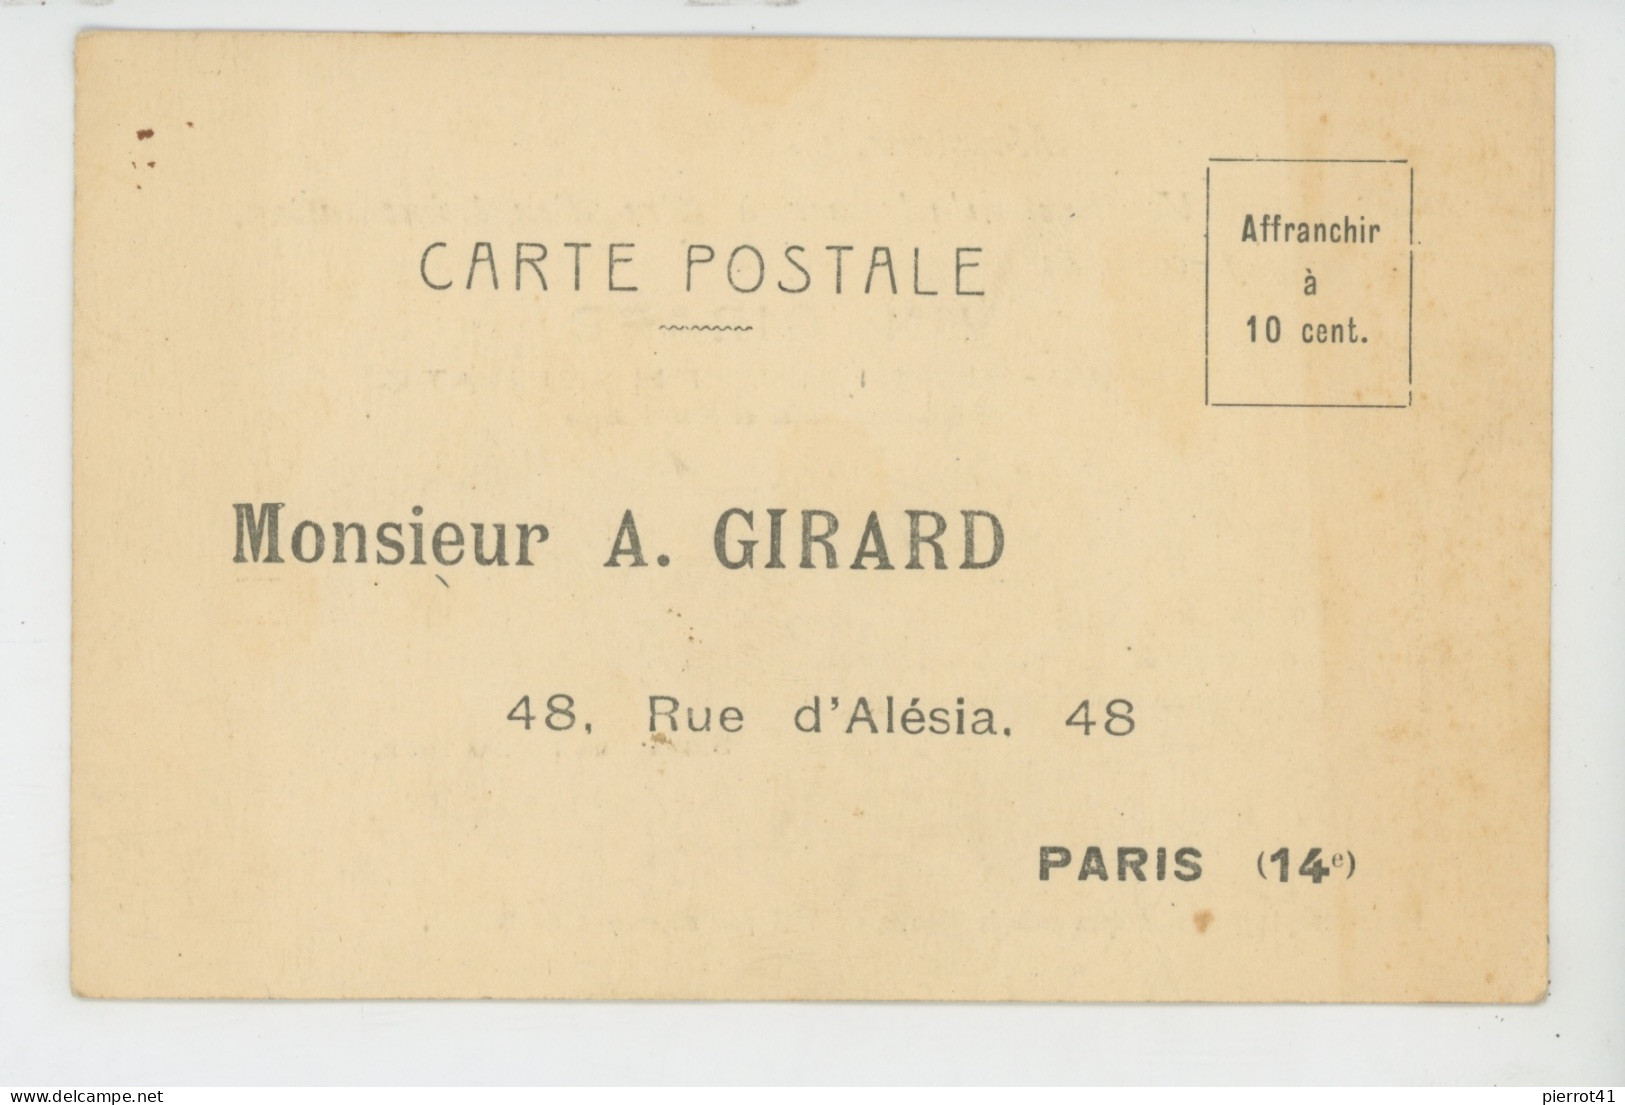 PARIS - XIVème Arr. - Carte De Correspondance VIN GIRARD 48 Rue D'Alésia - Demande Flacon Pour Expérimentation - Paris (14)